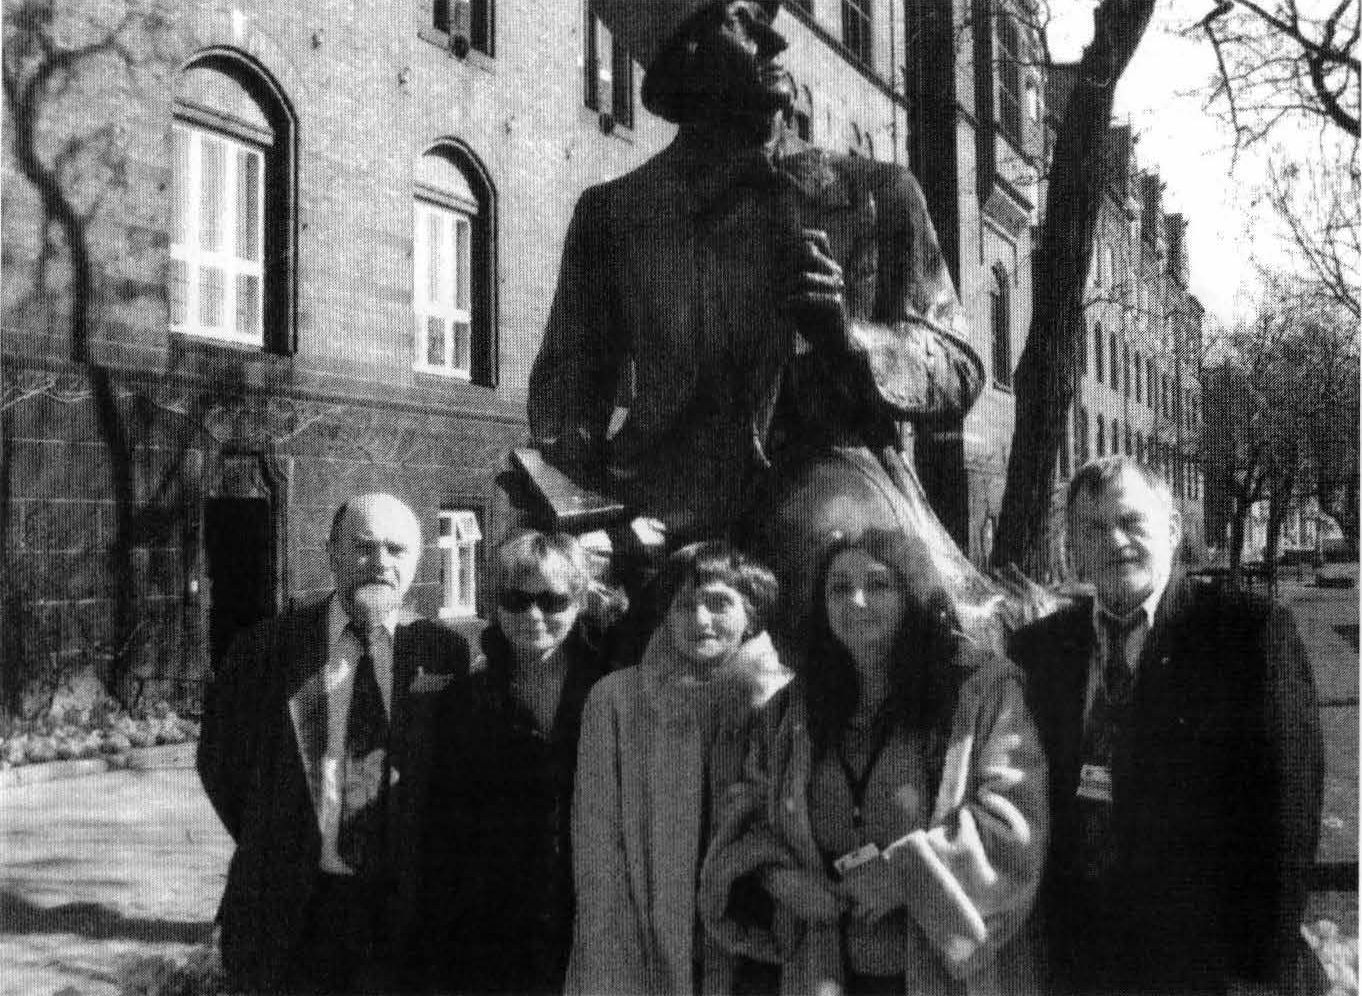 Слева направо: Борис Жаров, Елена Гагарина, Людмила Брауде, Мария Арбатова, Борис Диодоров. Копенгаген, памятник Андерсену у Ратуши. 3 апреля 2005 г.